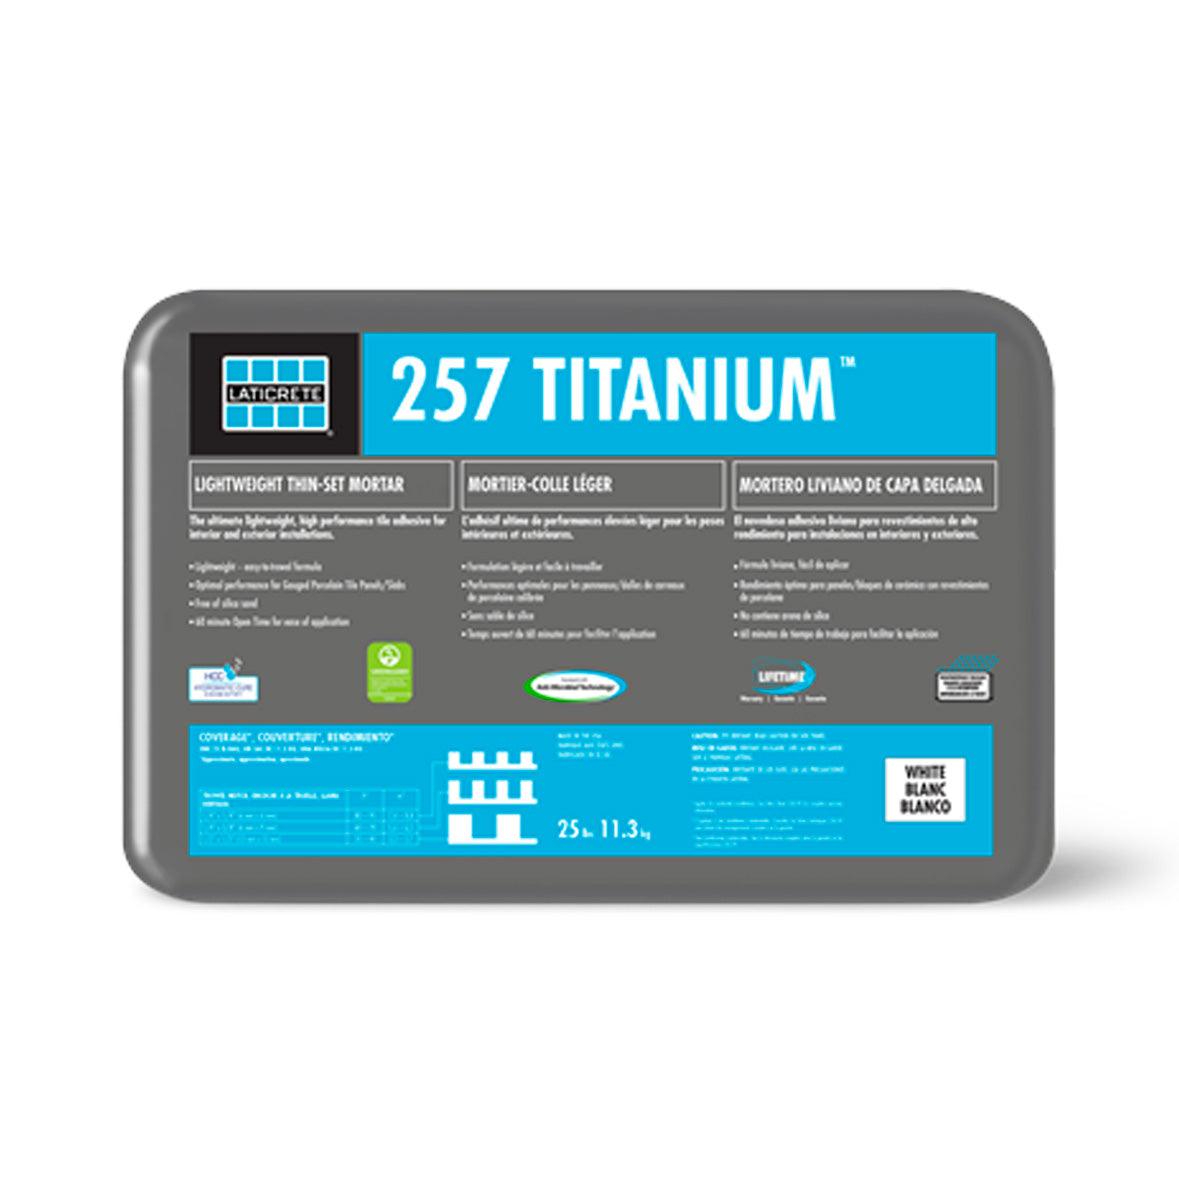 Thinset - Titanium 257